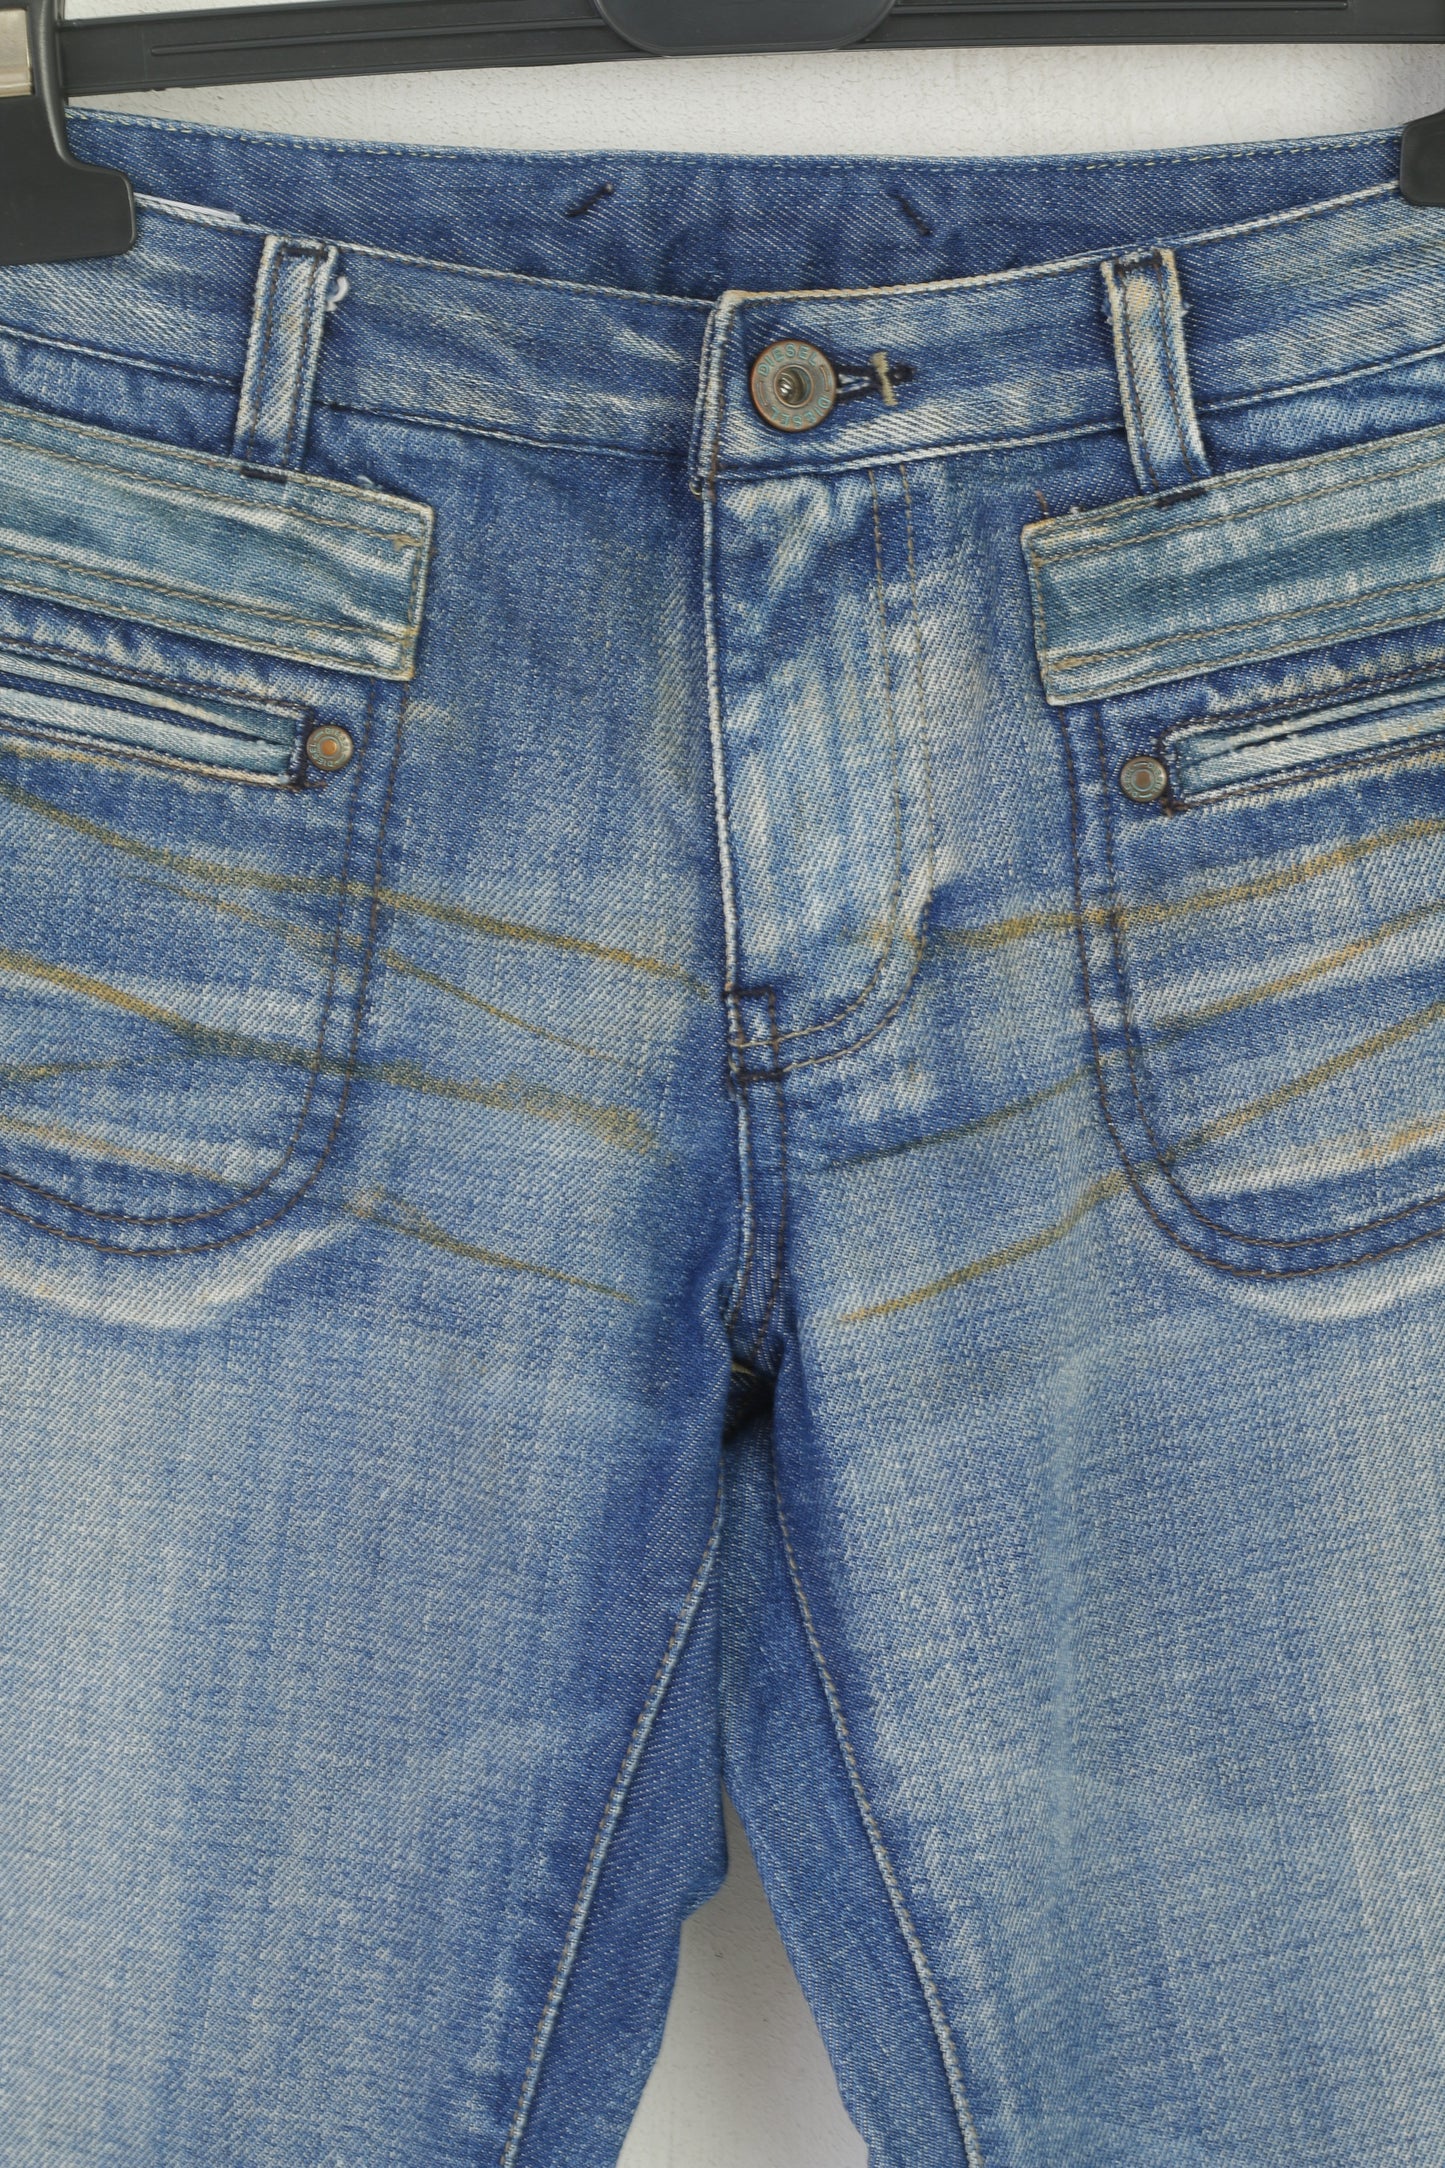 Diesel Women 26 Jeans Trousers Blue Denim Cotton Bootcut Vintage Long Pants